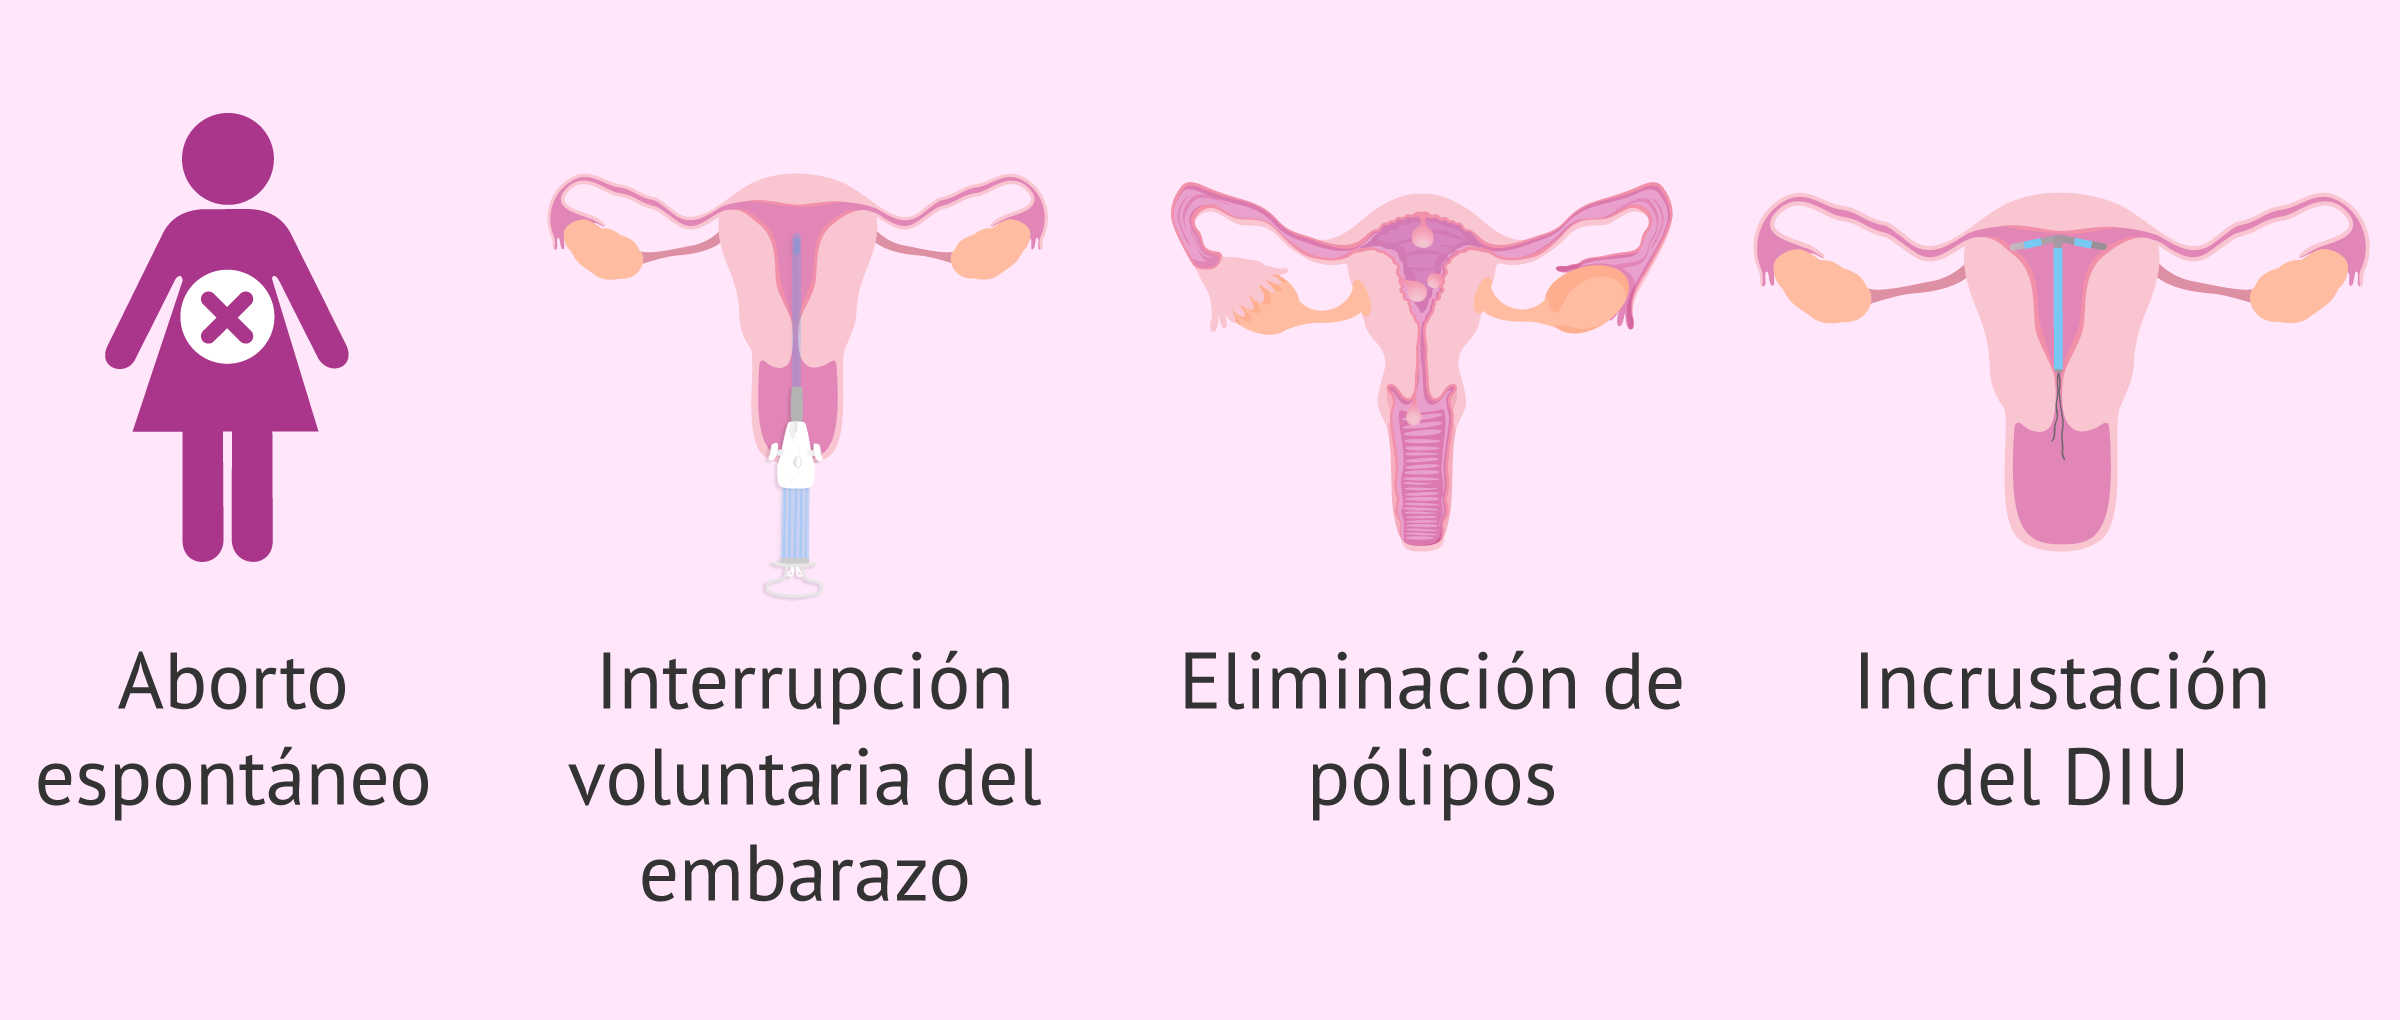 Indicaciones para un legrado uterino